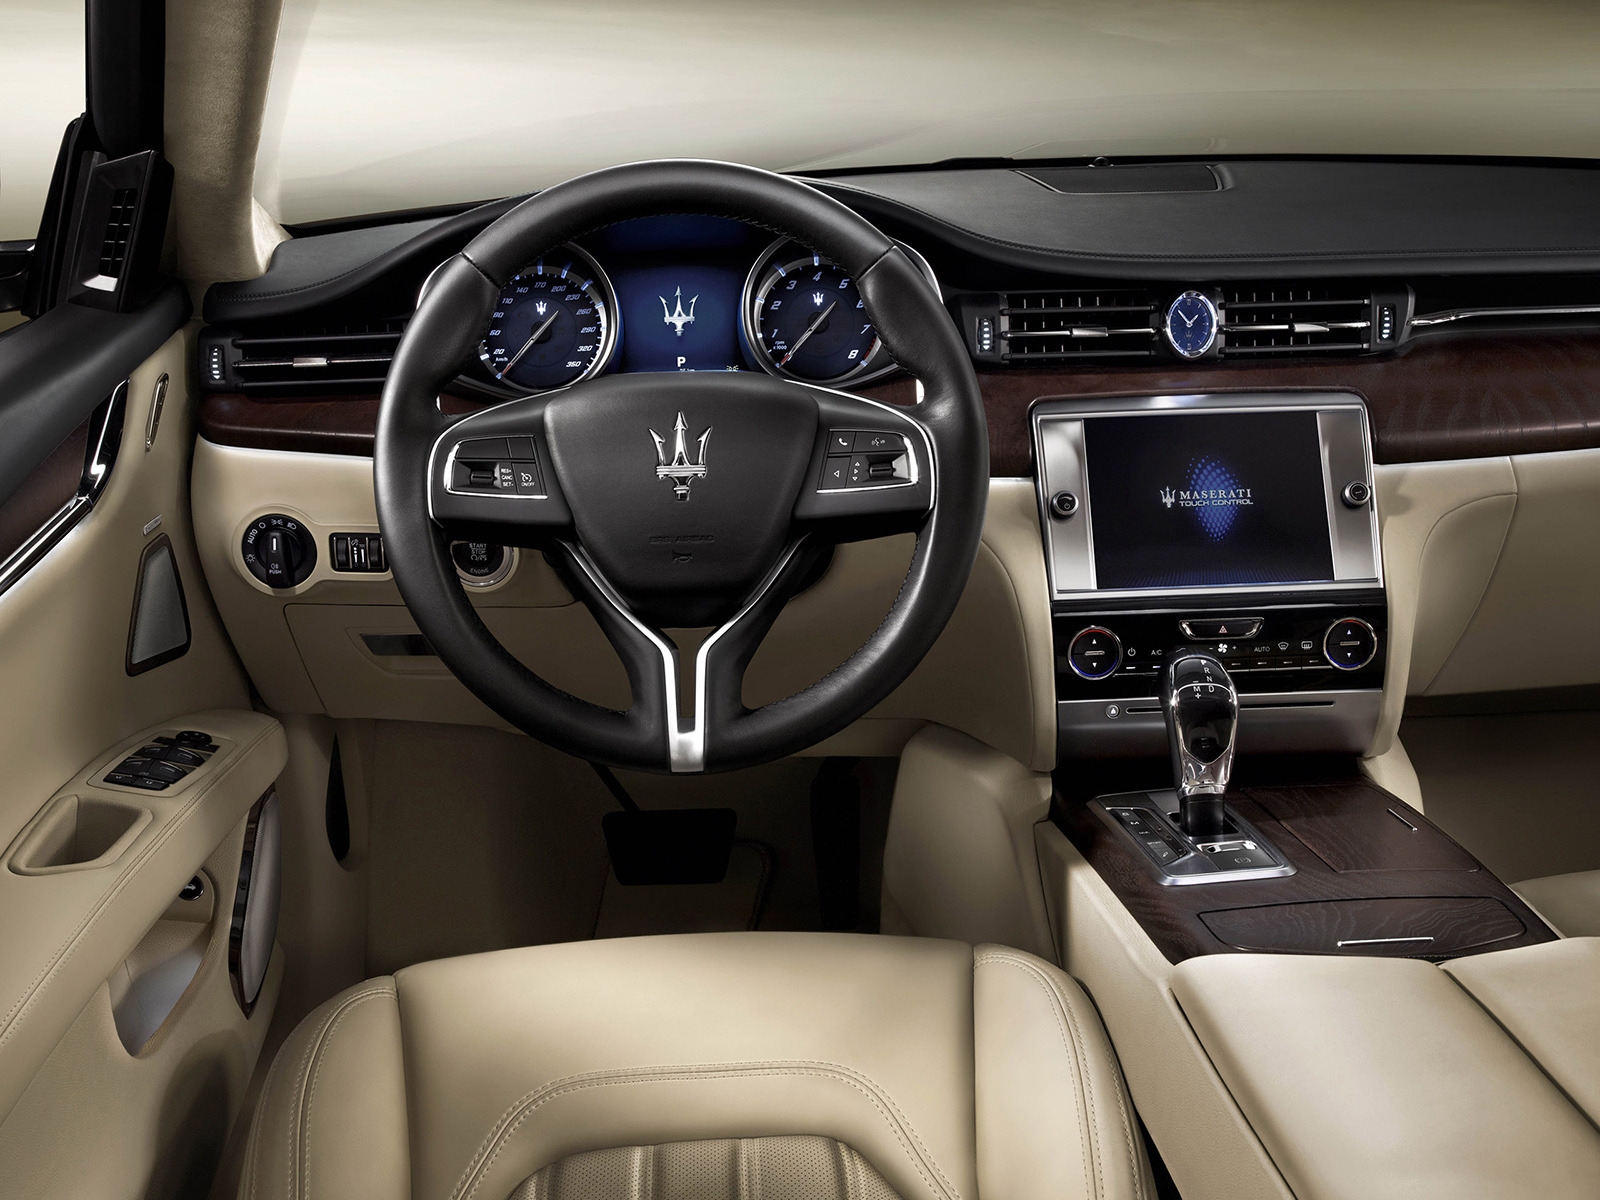 Interior of Maserati Quattroporte for 1600 x 1200 resolution